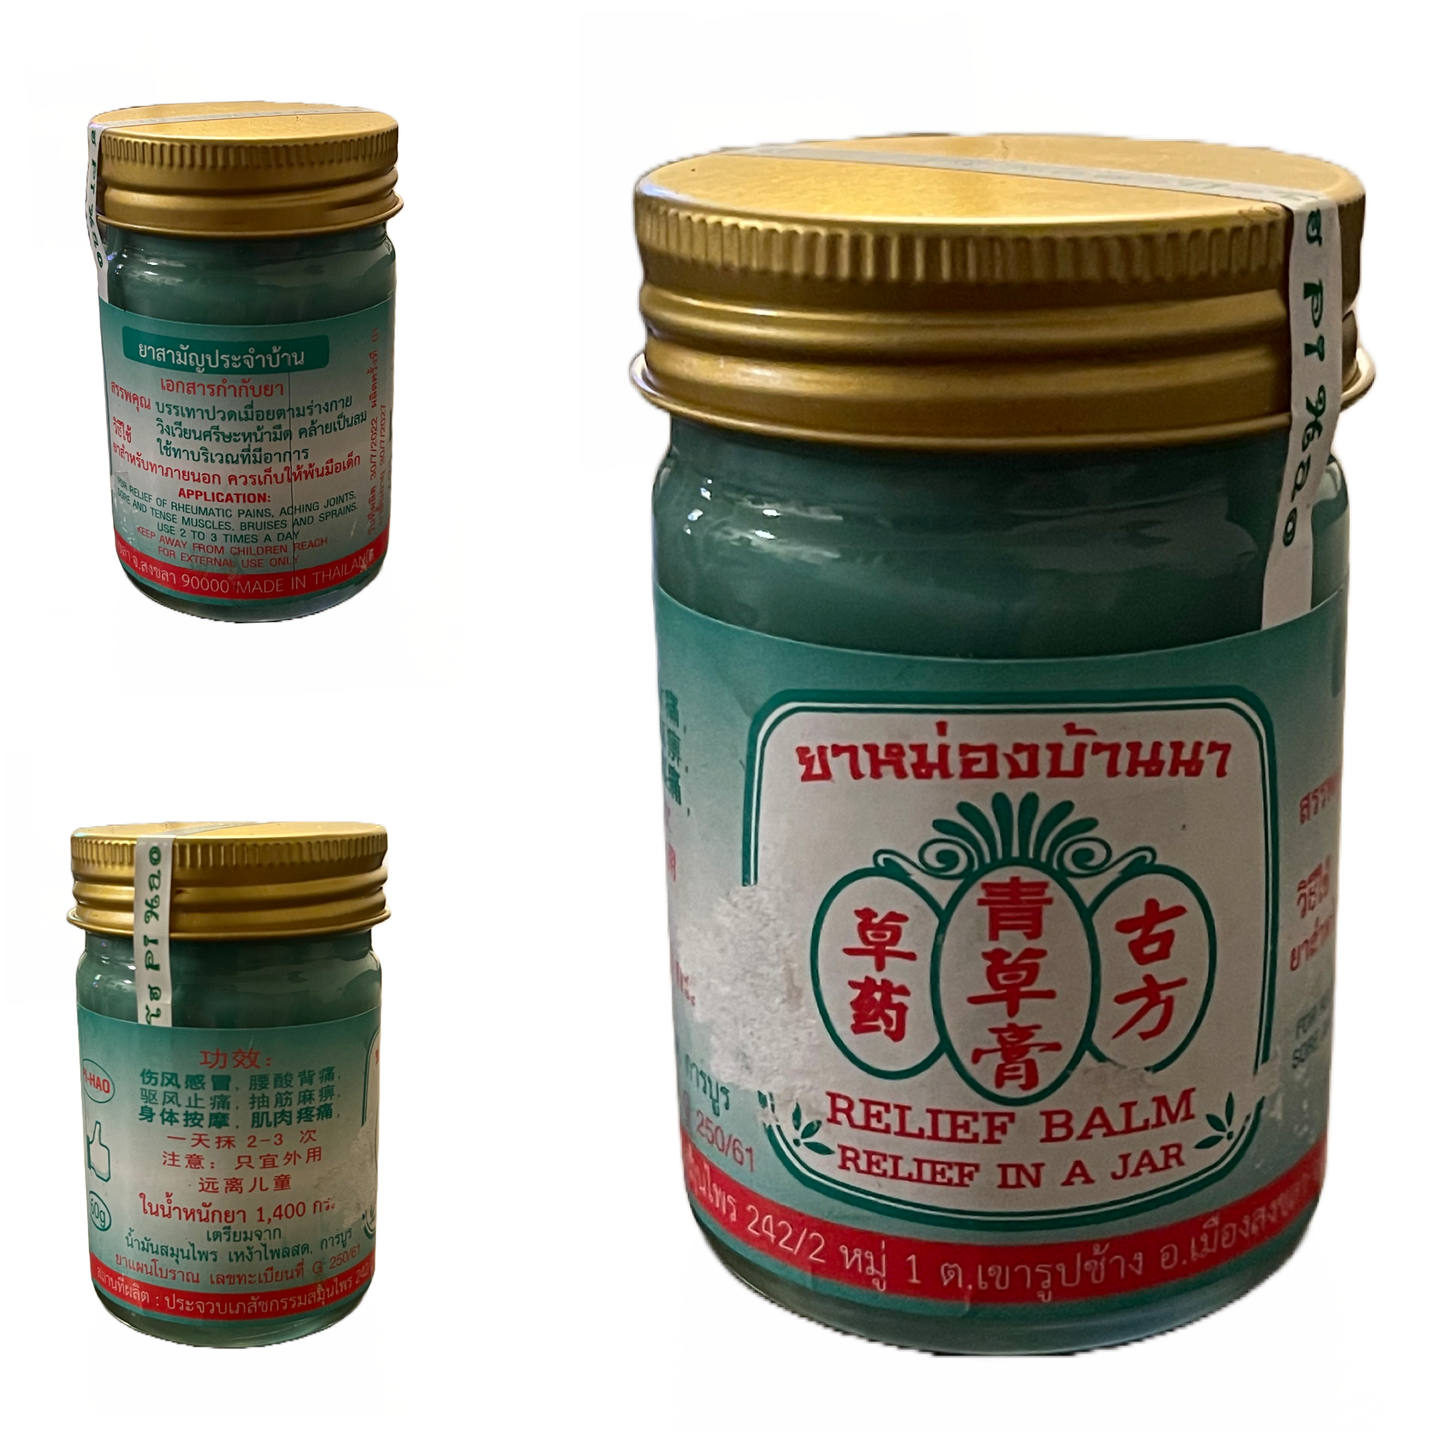 Thai Pain Relief Balm